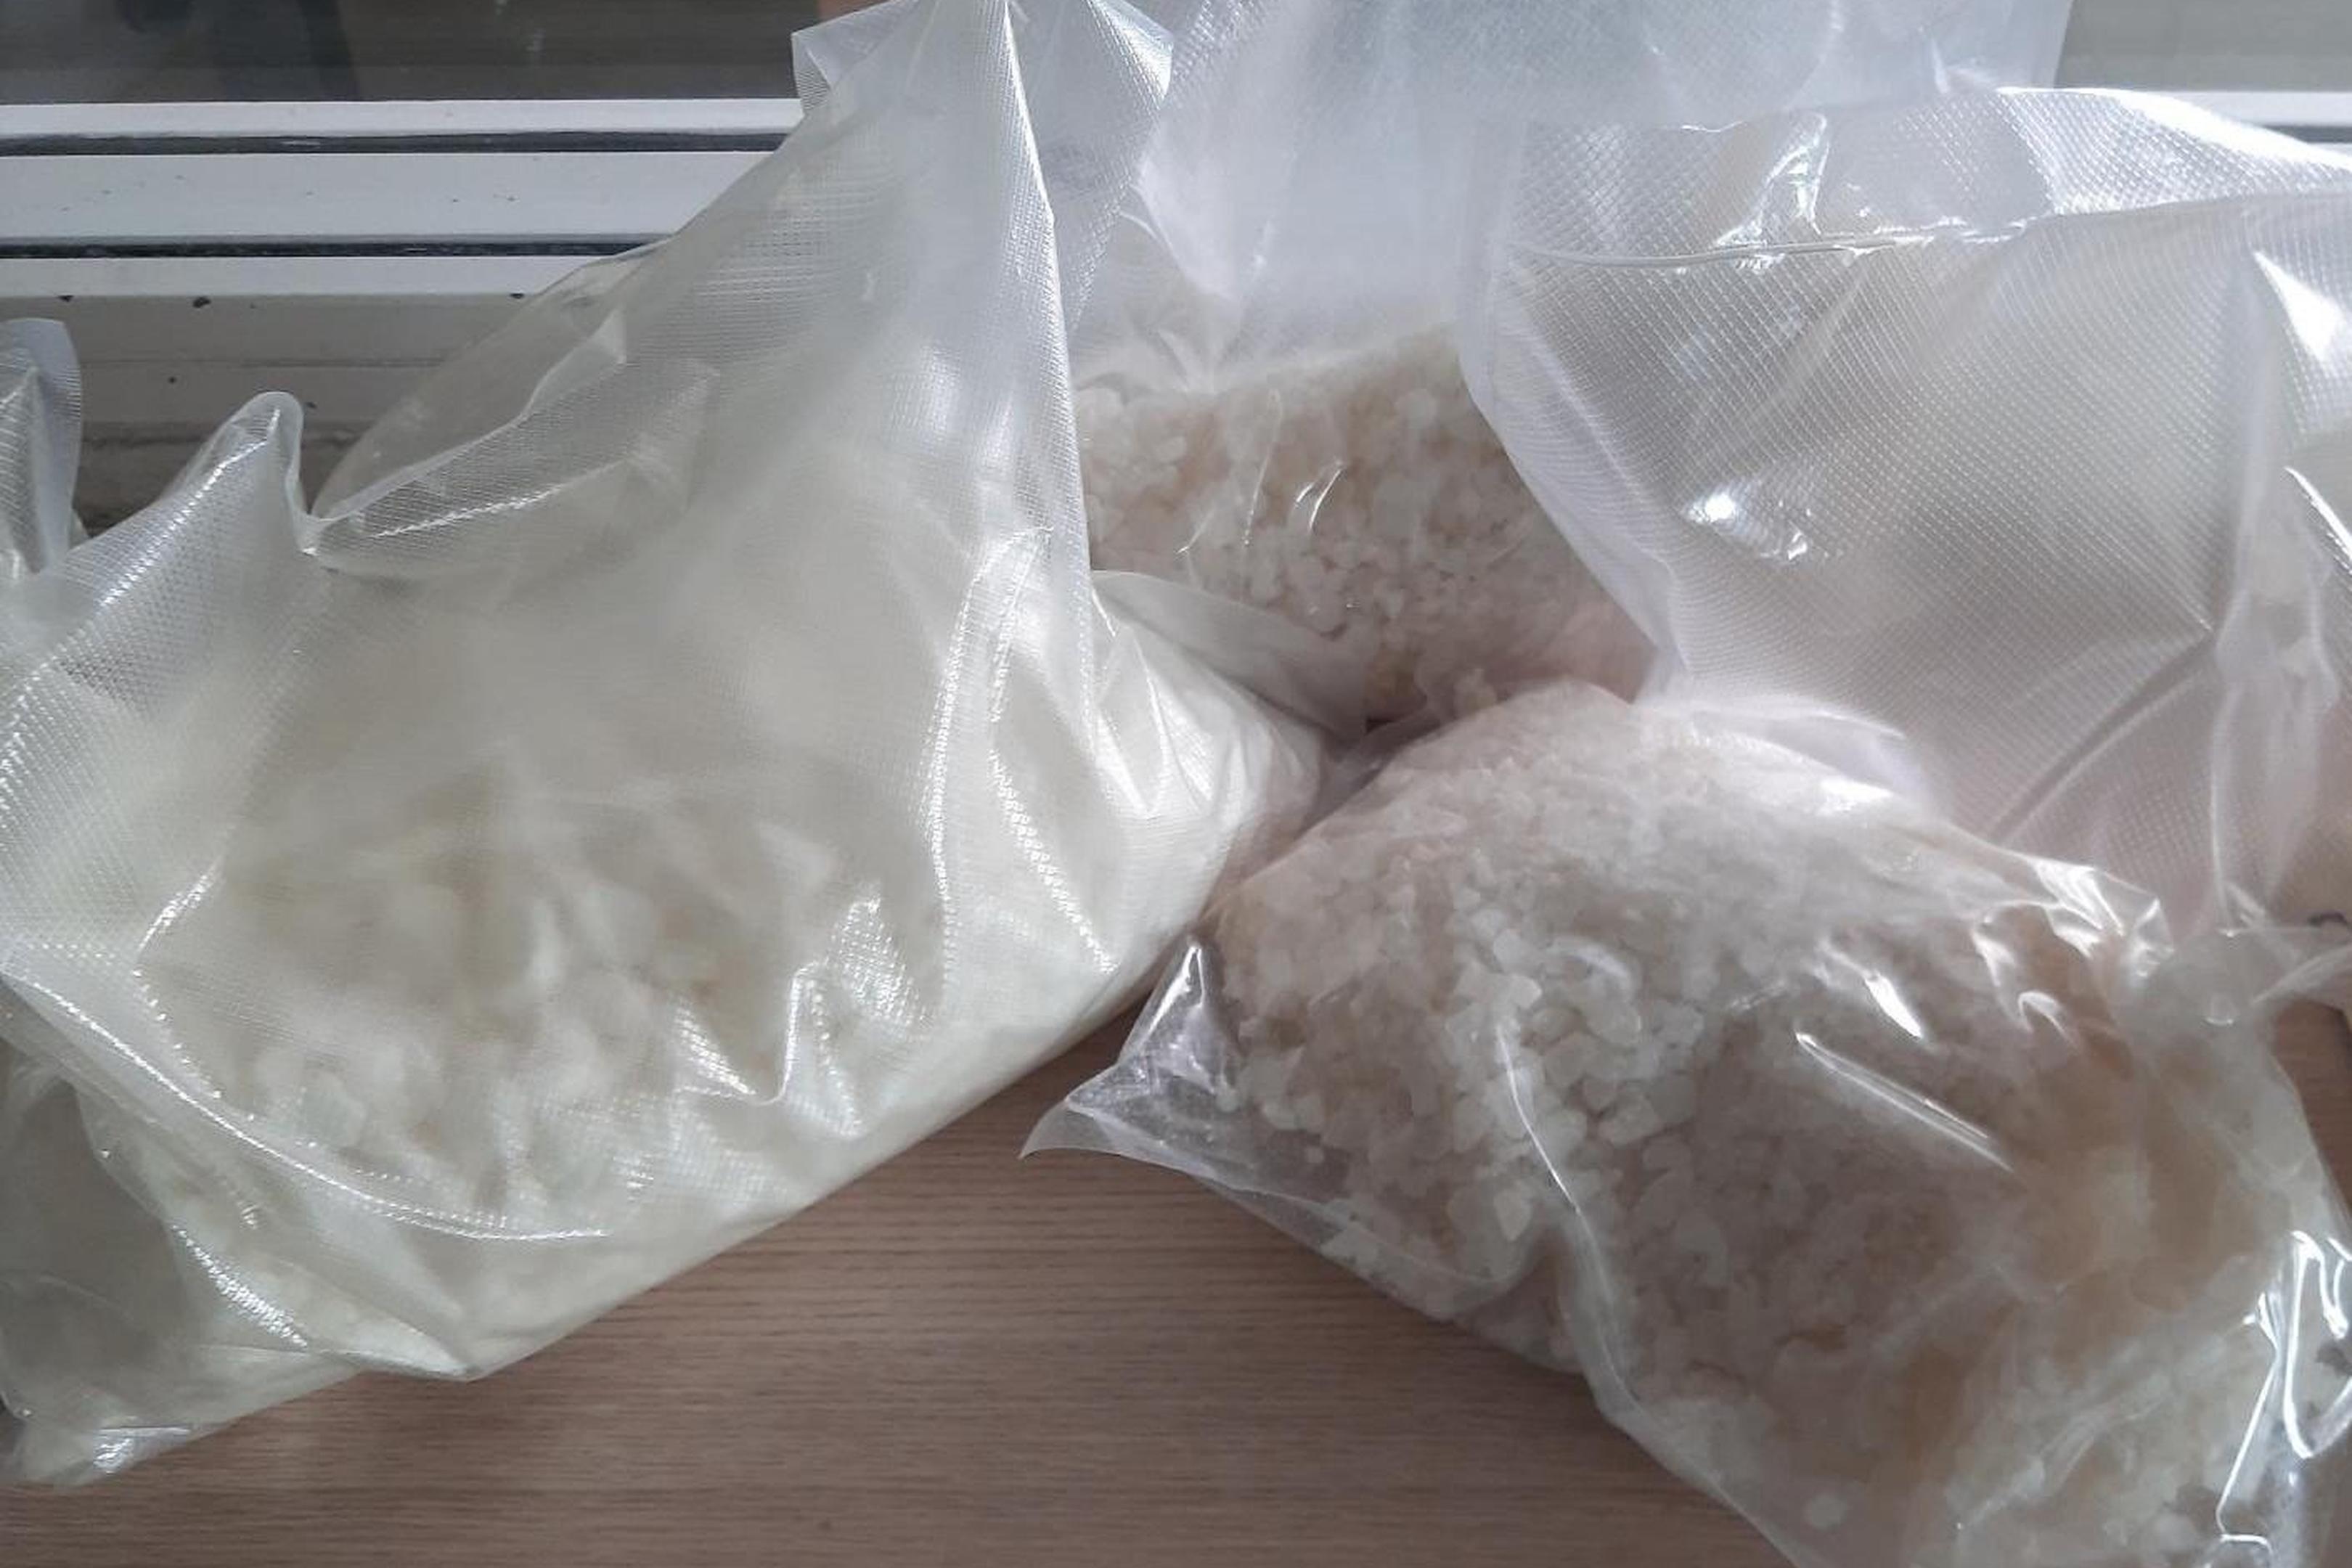 Die Bundespolizei beschlagnahmt 4,3 Kilogramm Amphetamin im Verkehrswert von über 20.000 Euro.